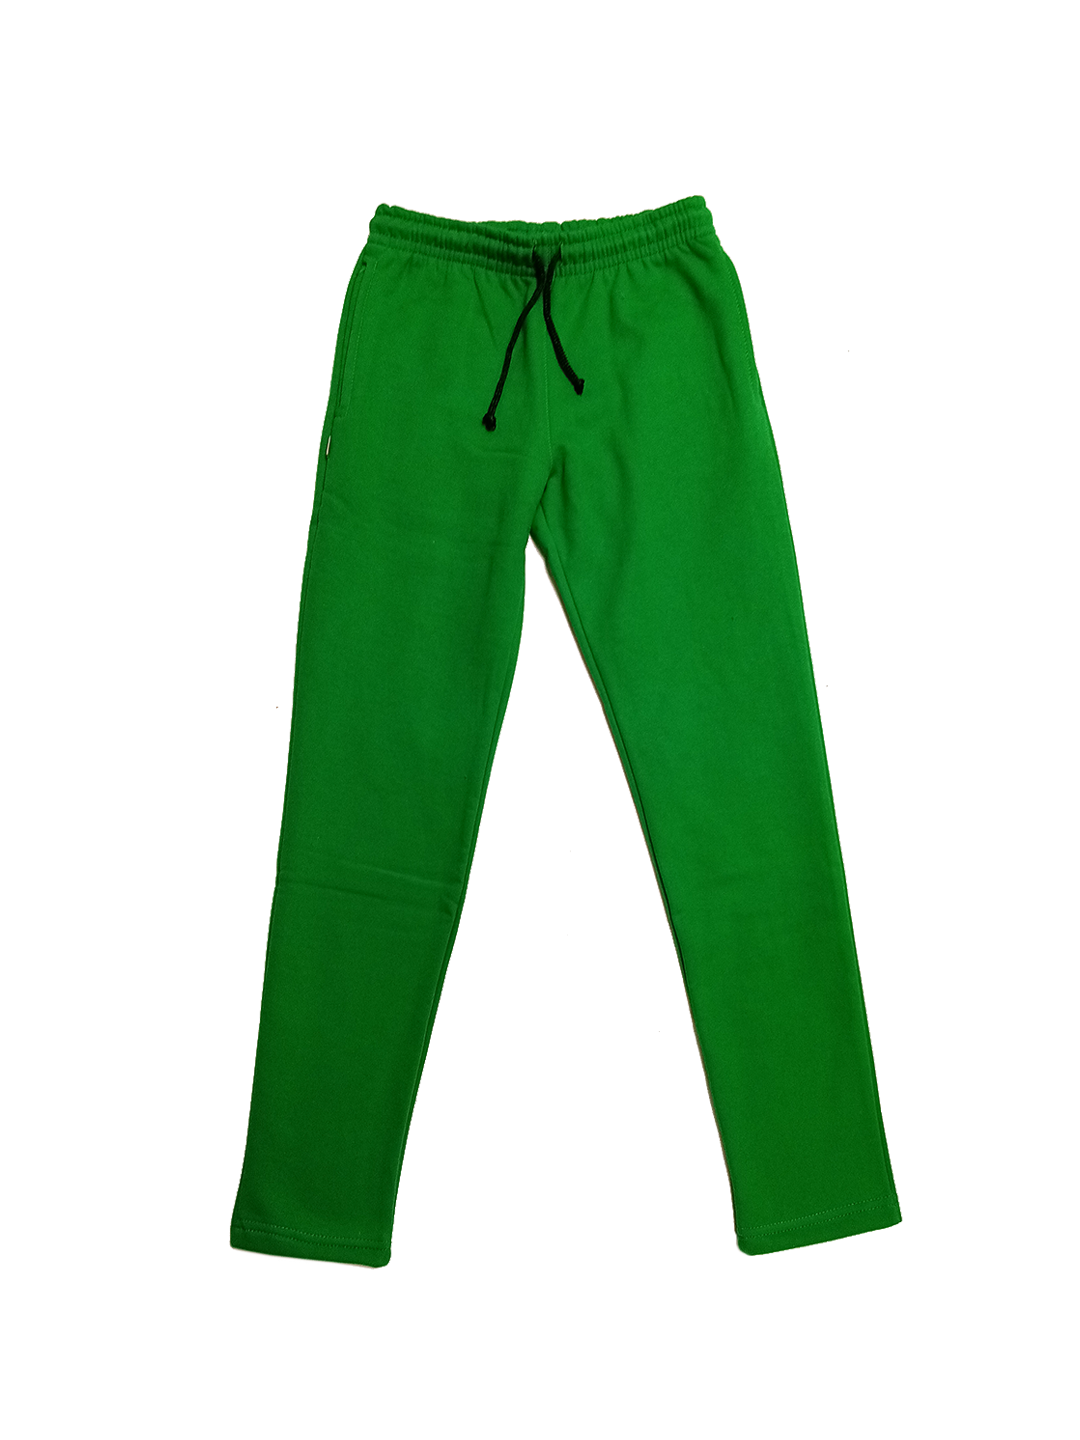 Joggers y Pants deportivos de color verde para mujer